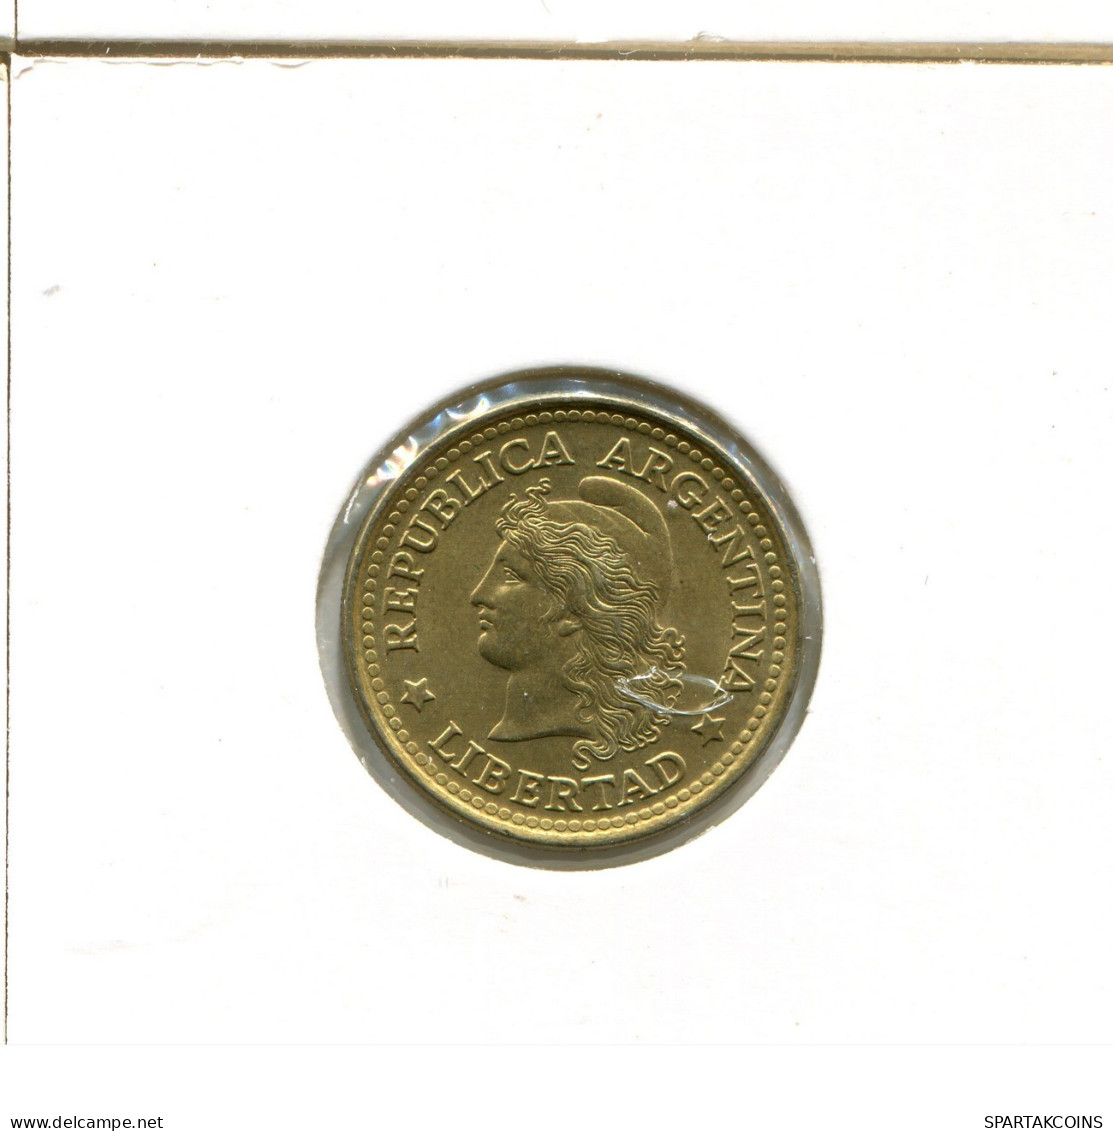 50 CENTAVOS 1970 ARGENTINA Coin #AX297.U.A - Argentine